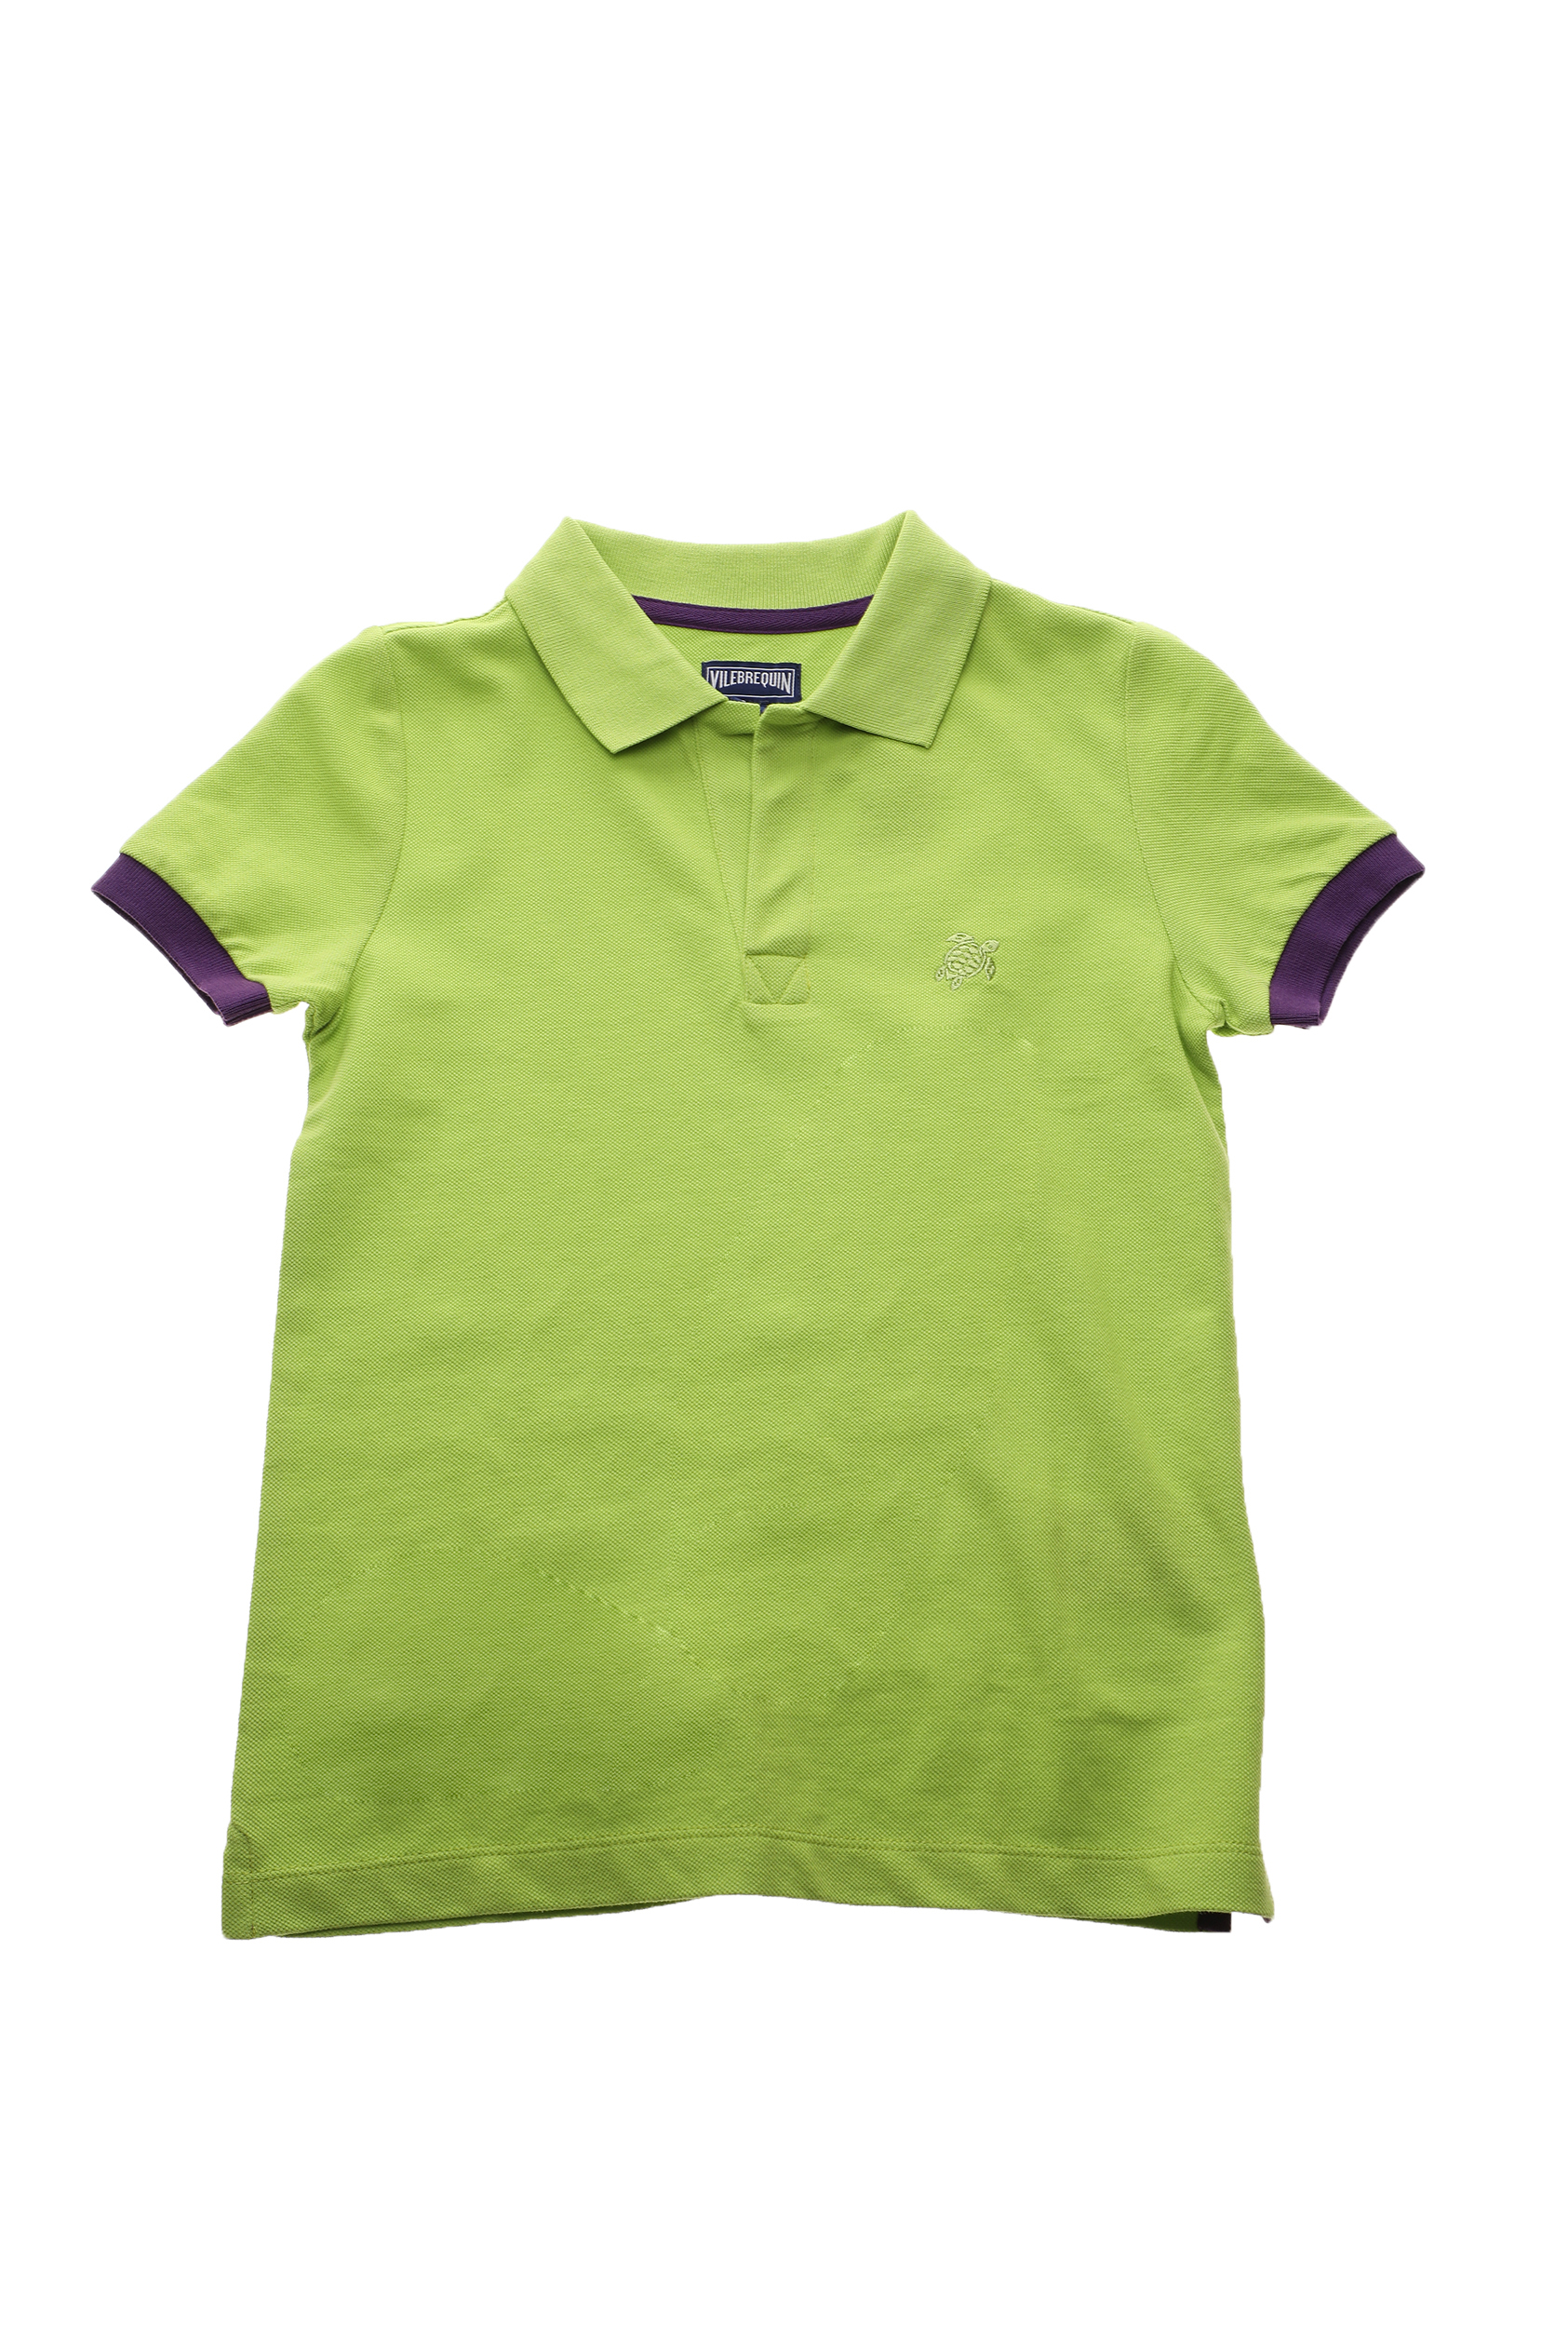 Παιδικά/Boys/Ρούχα/Μπλούζες VILEBREQUIN - Παιδική polo μπλούζα VILEBREQUIN PANTIN πράσινη μοβ